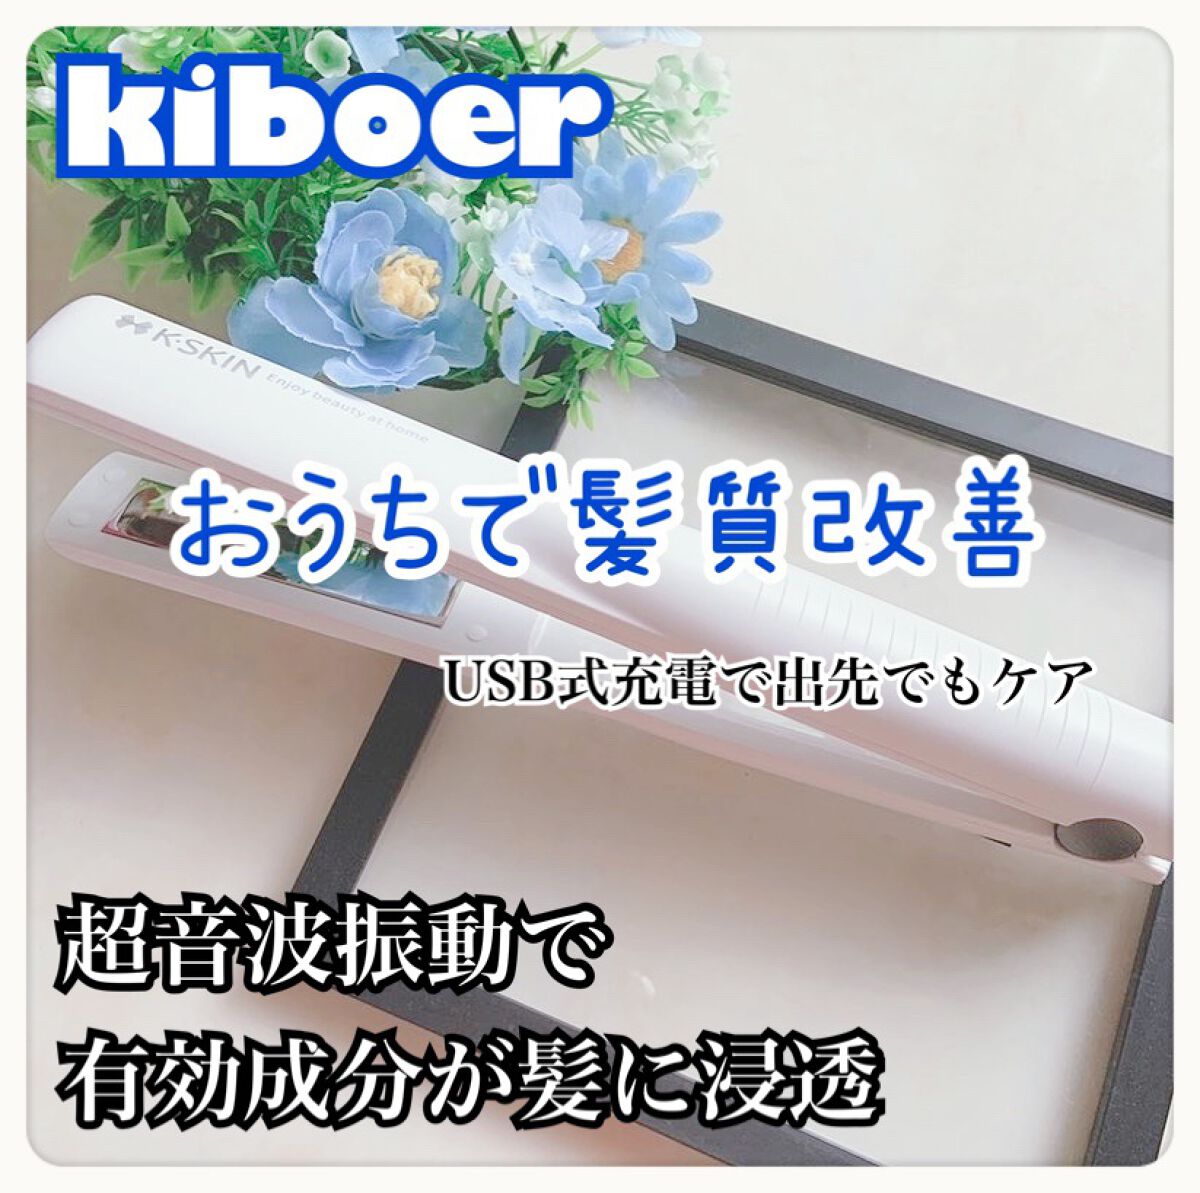 Kiboer 超音波トリートメント 髪質改善